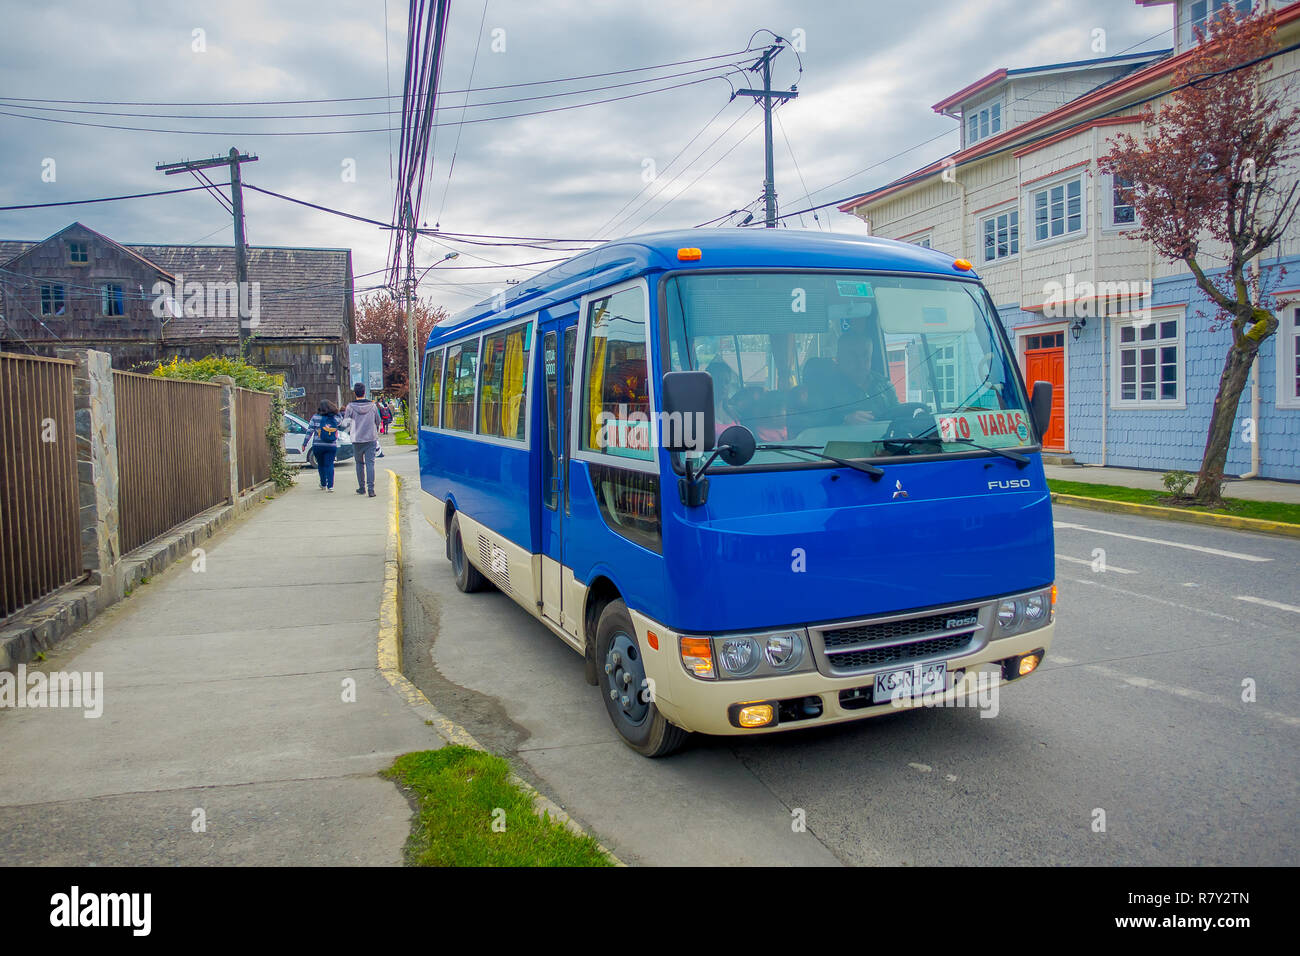 PUERTO VARAS, CHILI, septembre, 23, 2018 : vue extérieure de blue bus garés à un côté de la rue surrrounded de bâtiments en bois à jour nuageux à Puerto Varas au Chili Banque D'Images